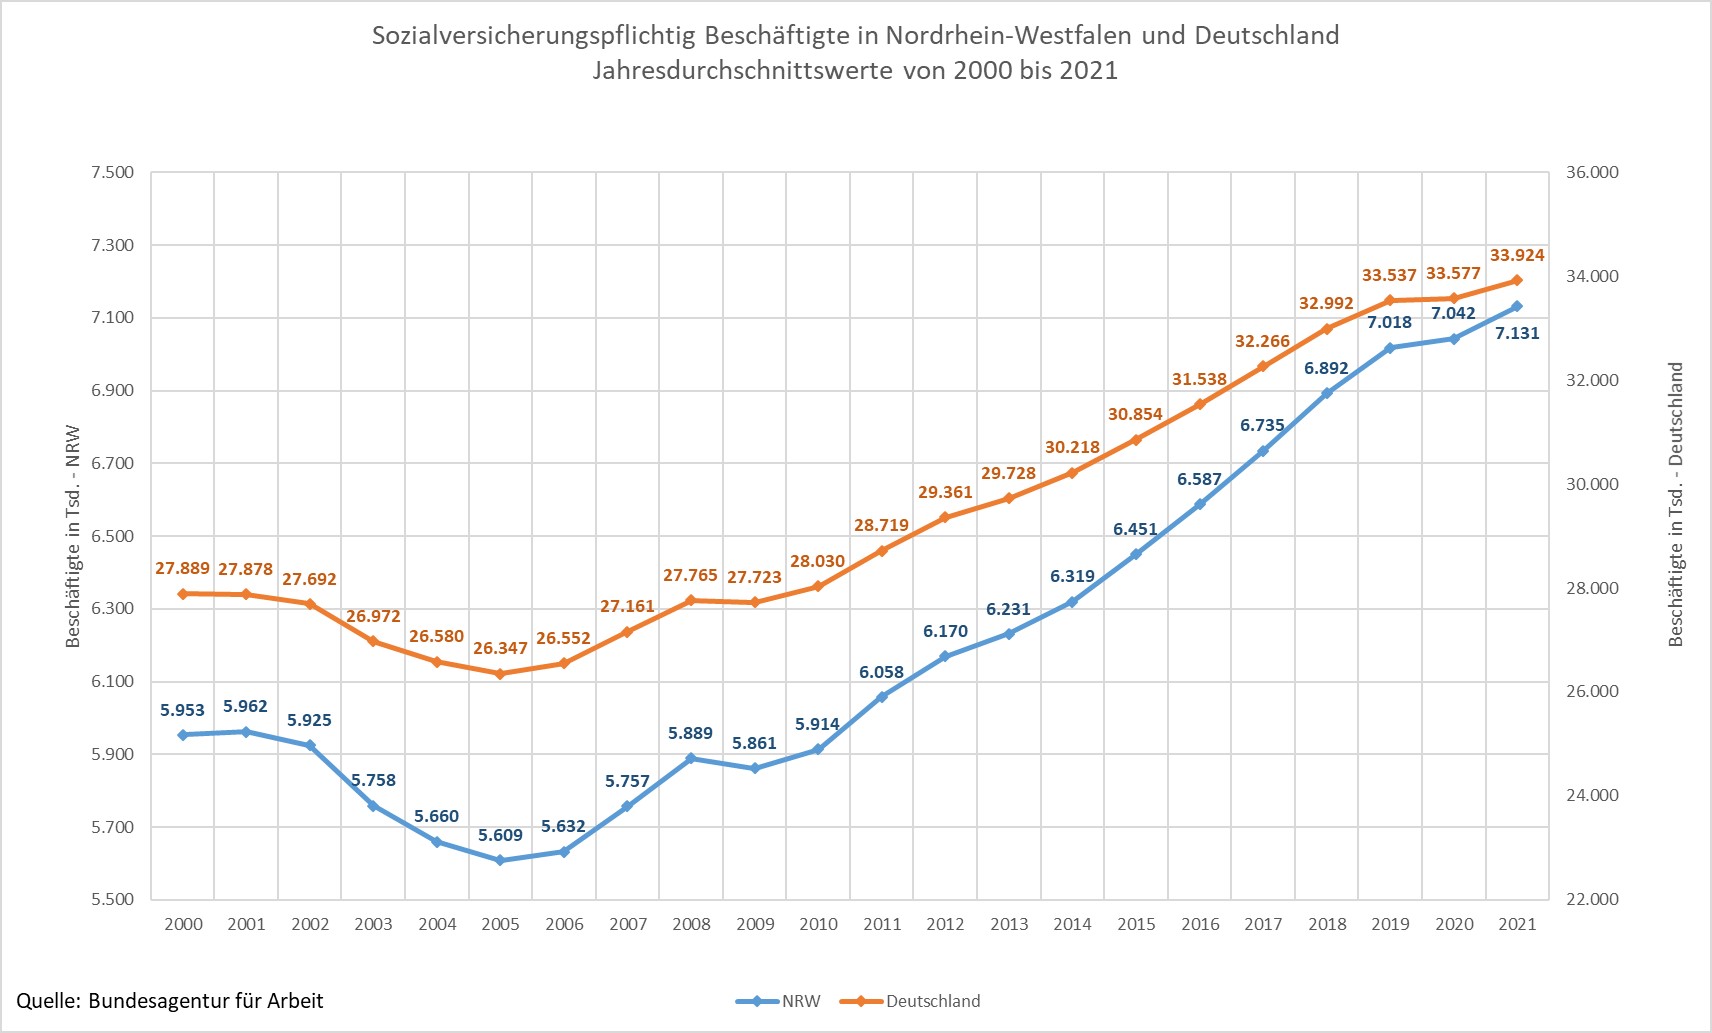 Sozialversicherungspflichtig Beschäftigte in NRW und Deutschland Jahresdurchschnittswerte von 2000 bis 2020